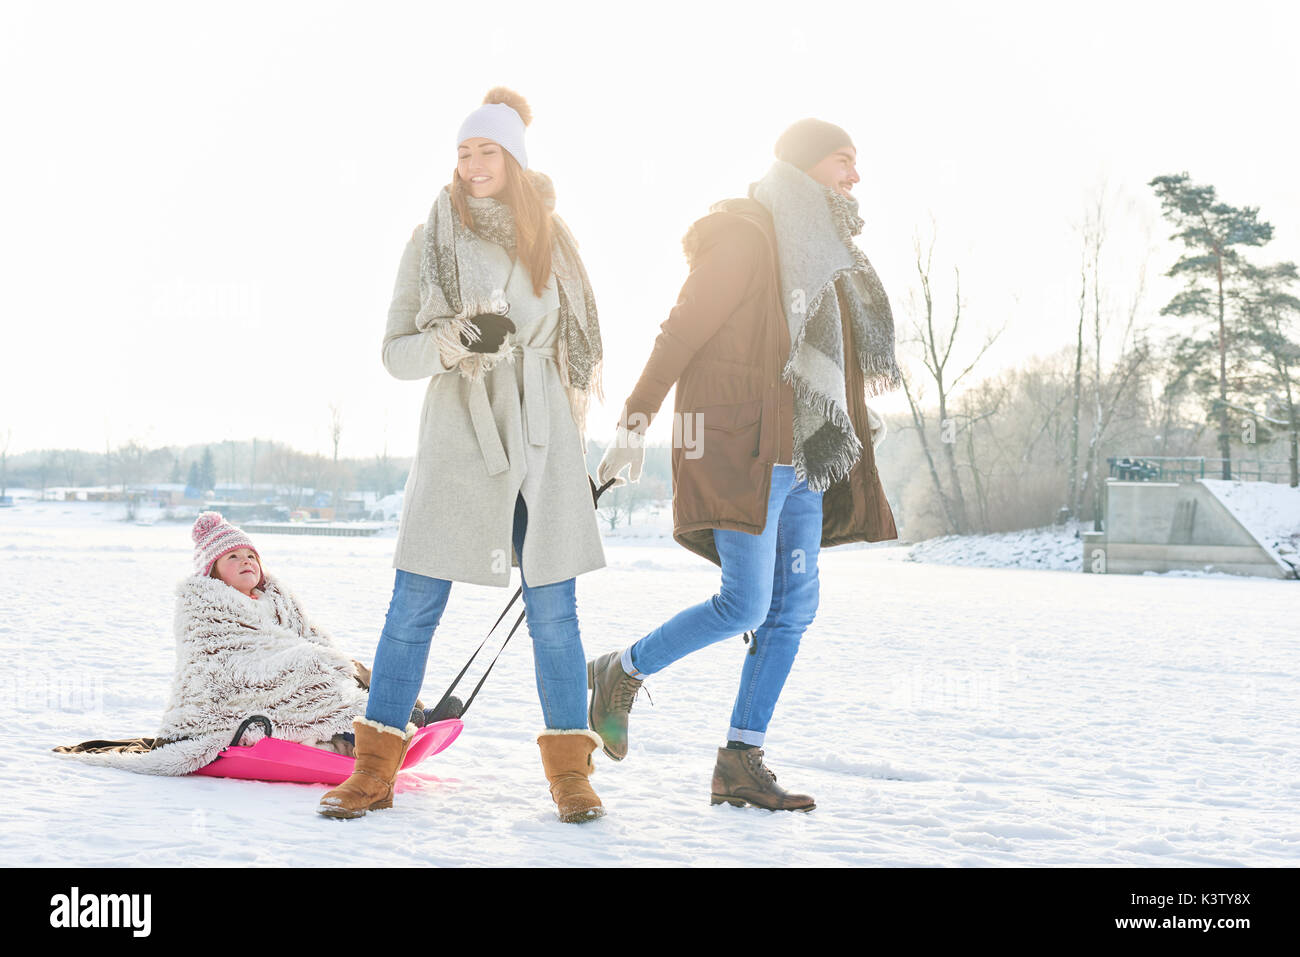 Famille faites une balade hivernale dans la nature avec les enfants sur un traîneau Banque D'Images